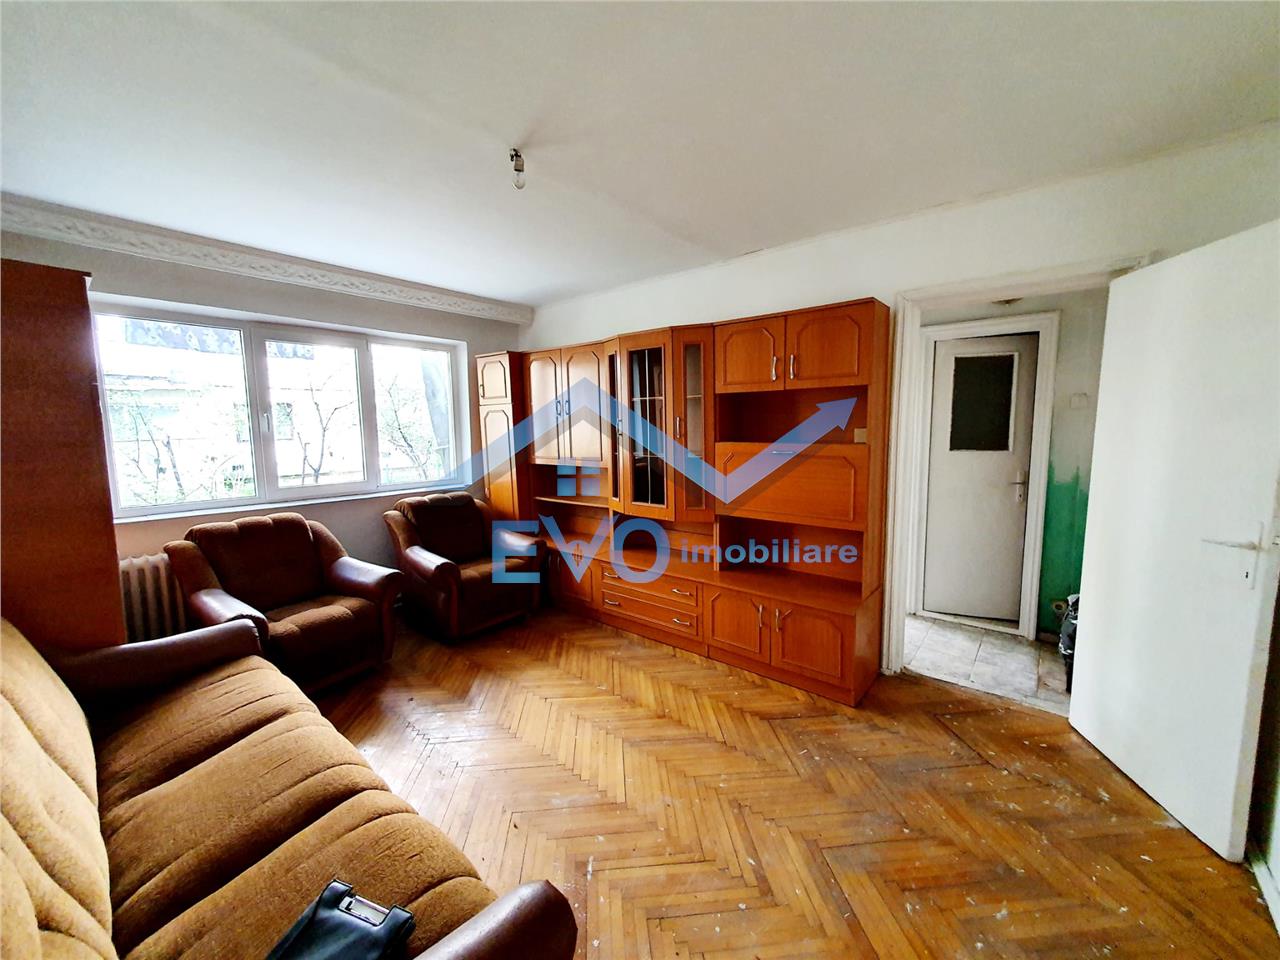 Vanzare apartament 2 camere, zona Dacia, cu acces in gradina